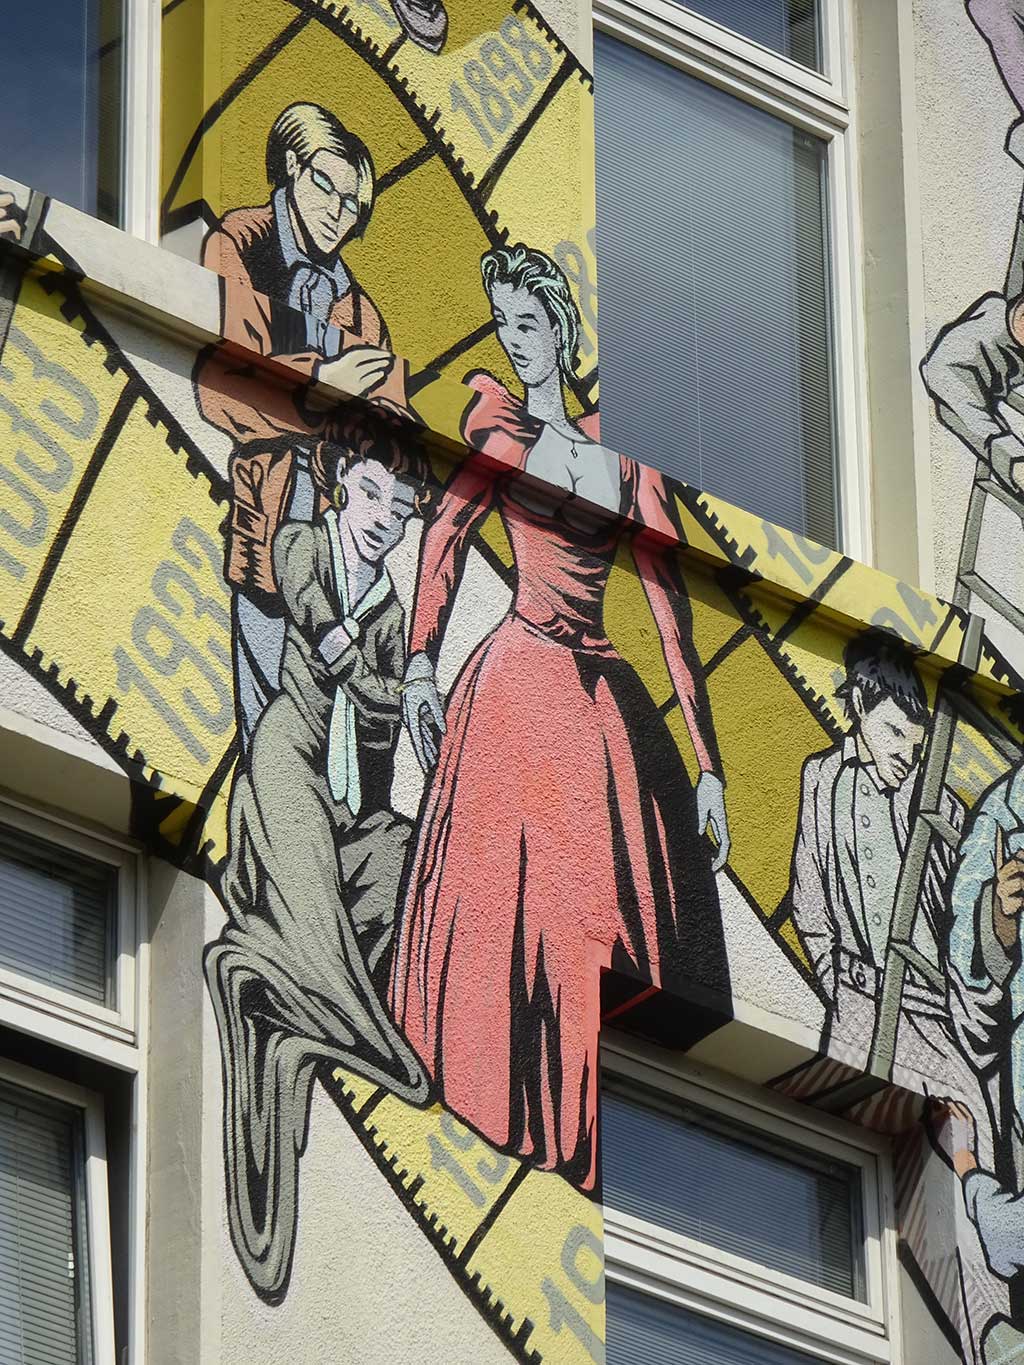 Rund 60 Figuren auf der Hausfassade illustrieren die Geschichte des Maßschneiderhandwerks sowie die Mode der jeweiligen Zeit